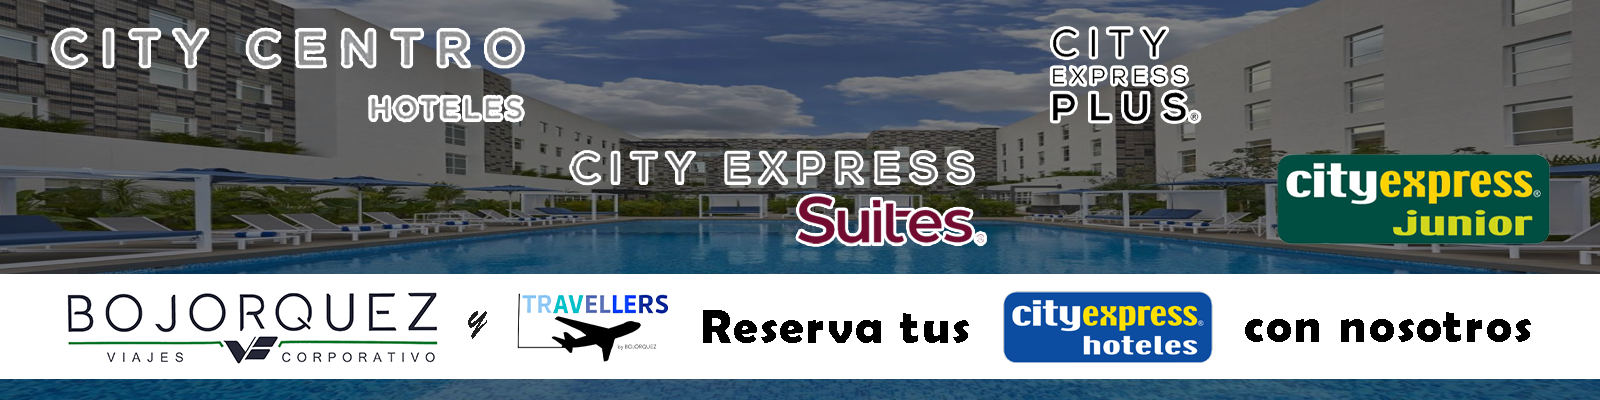 Hoteles City Express en convenio con Viajes Bojorquez - Travellers